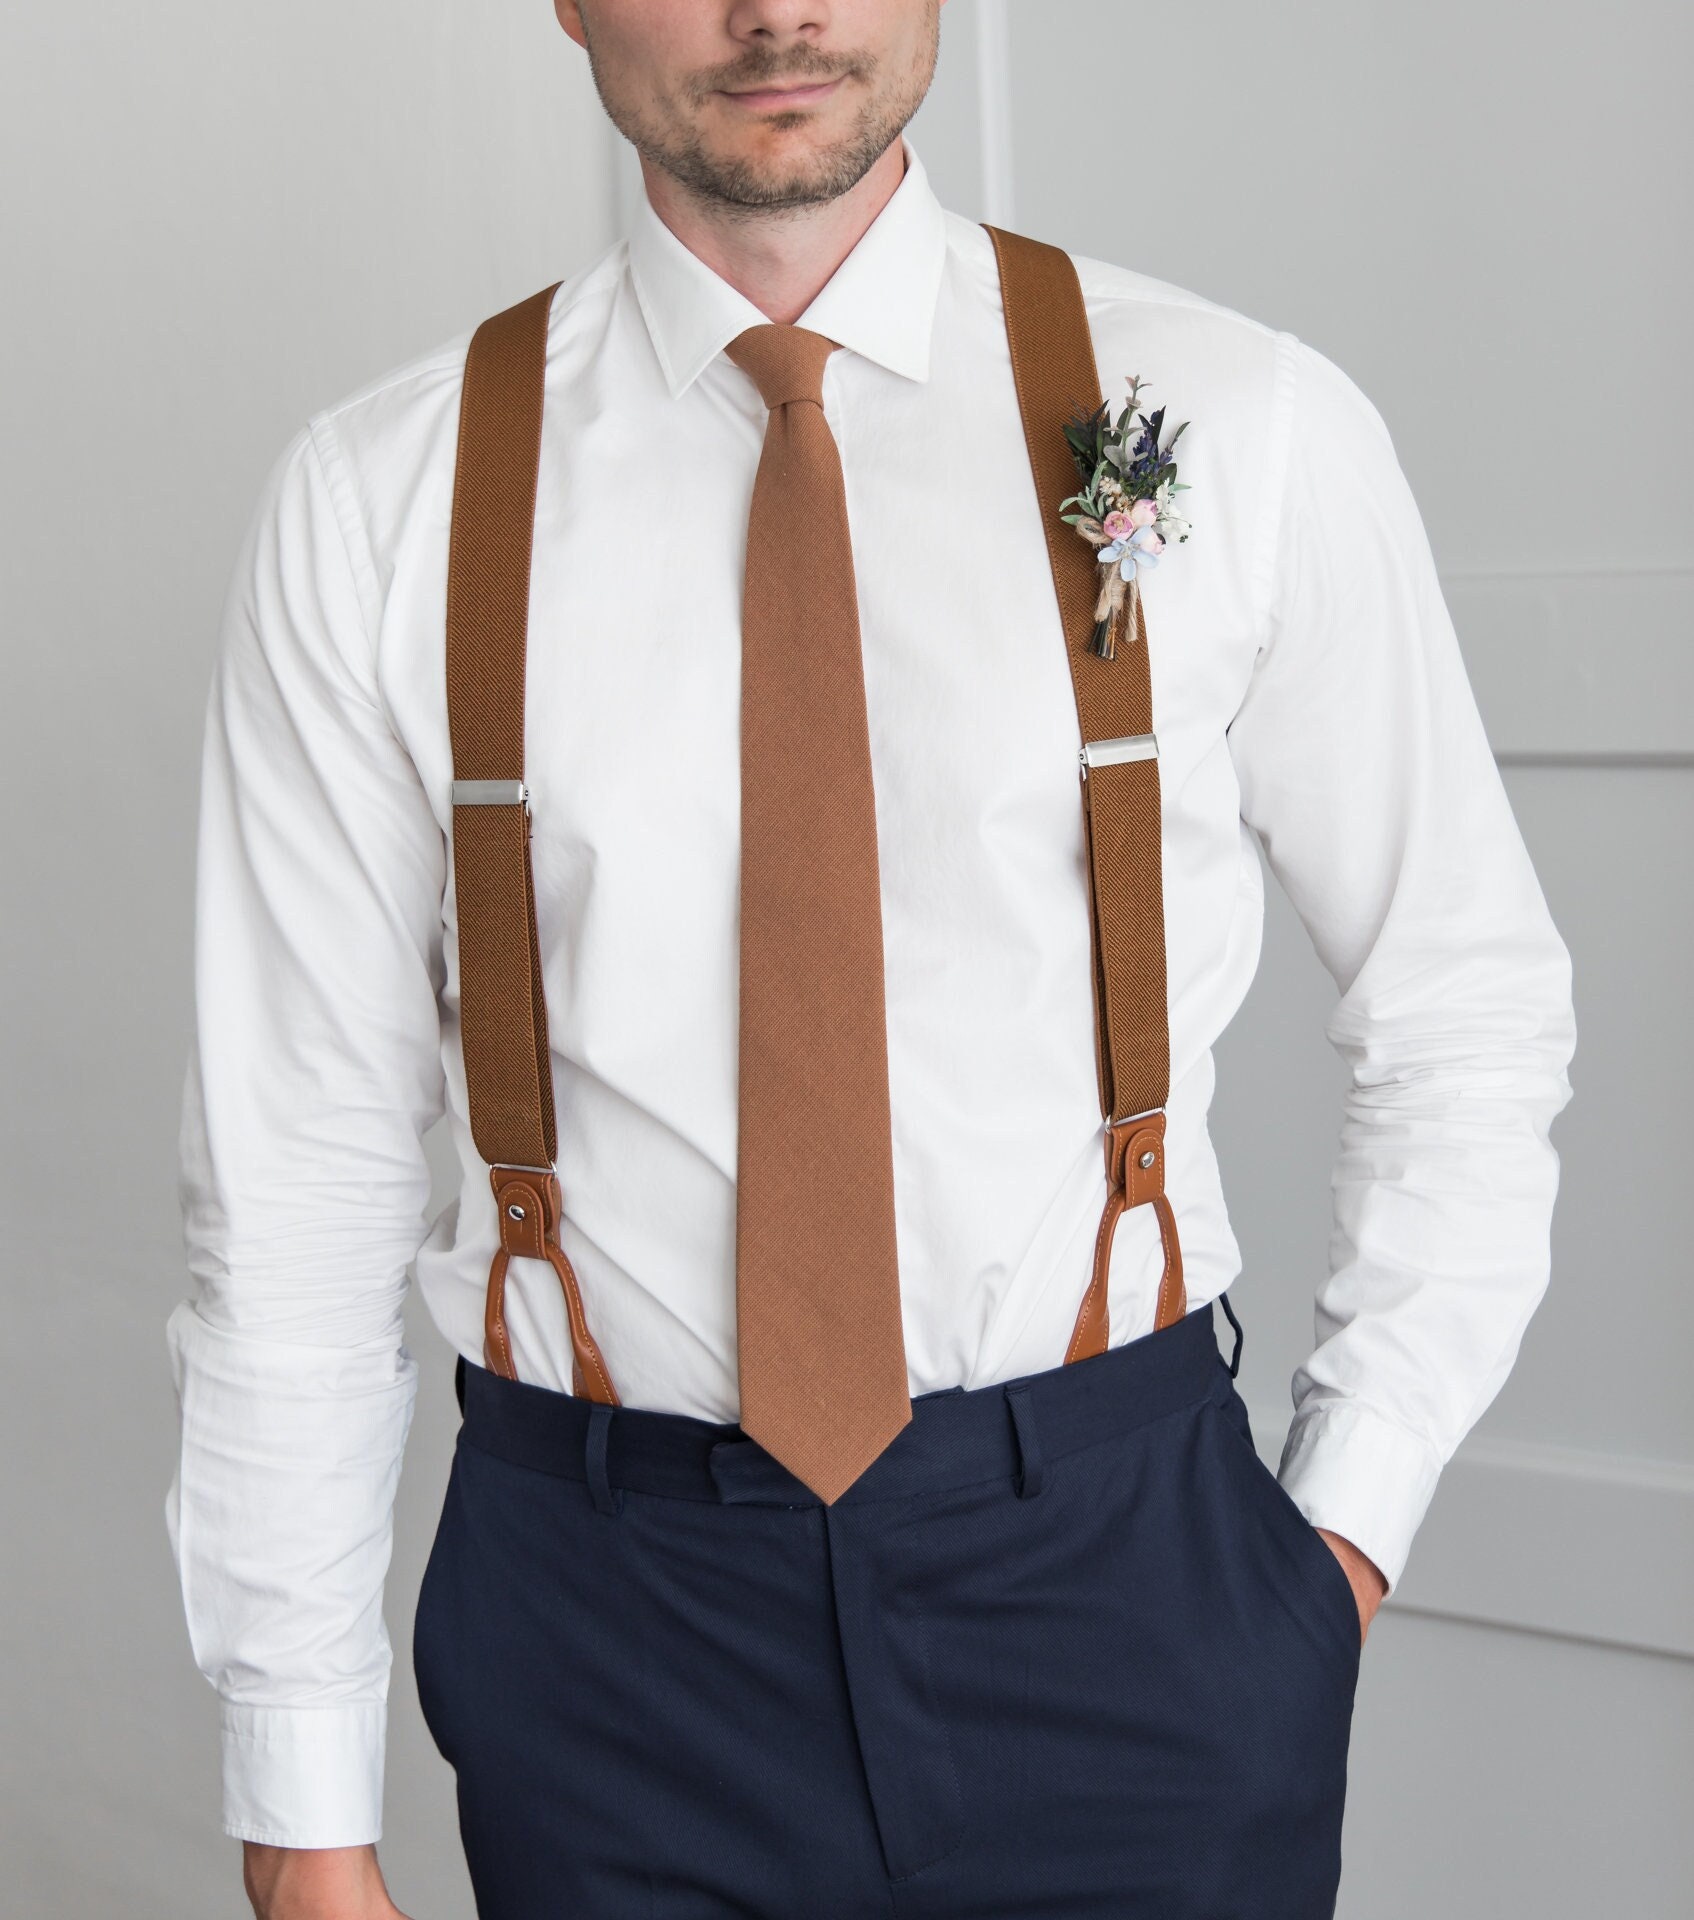 Buy Brown Suspenders for Men, Button Suspenders, Wedding